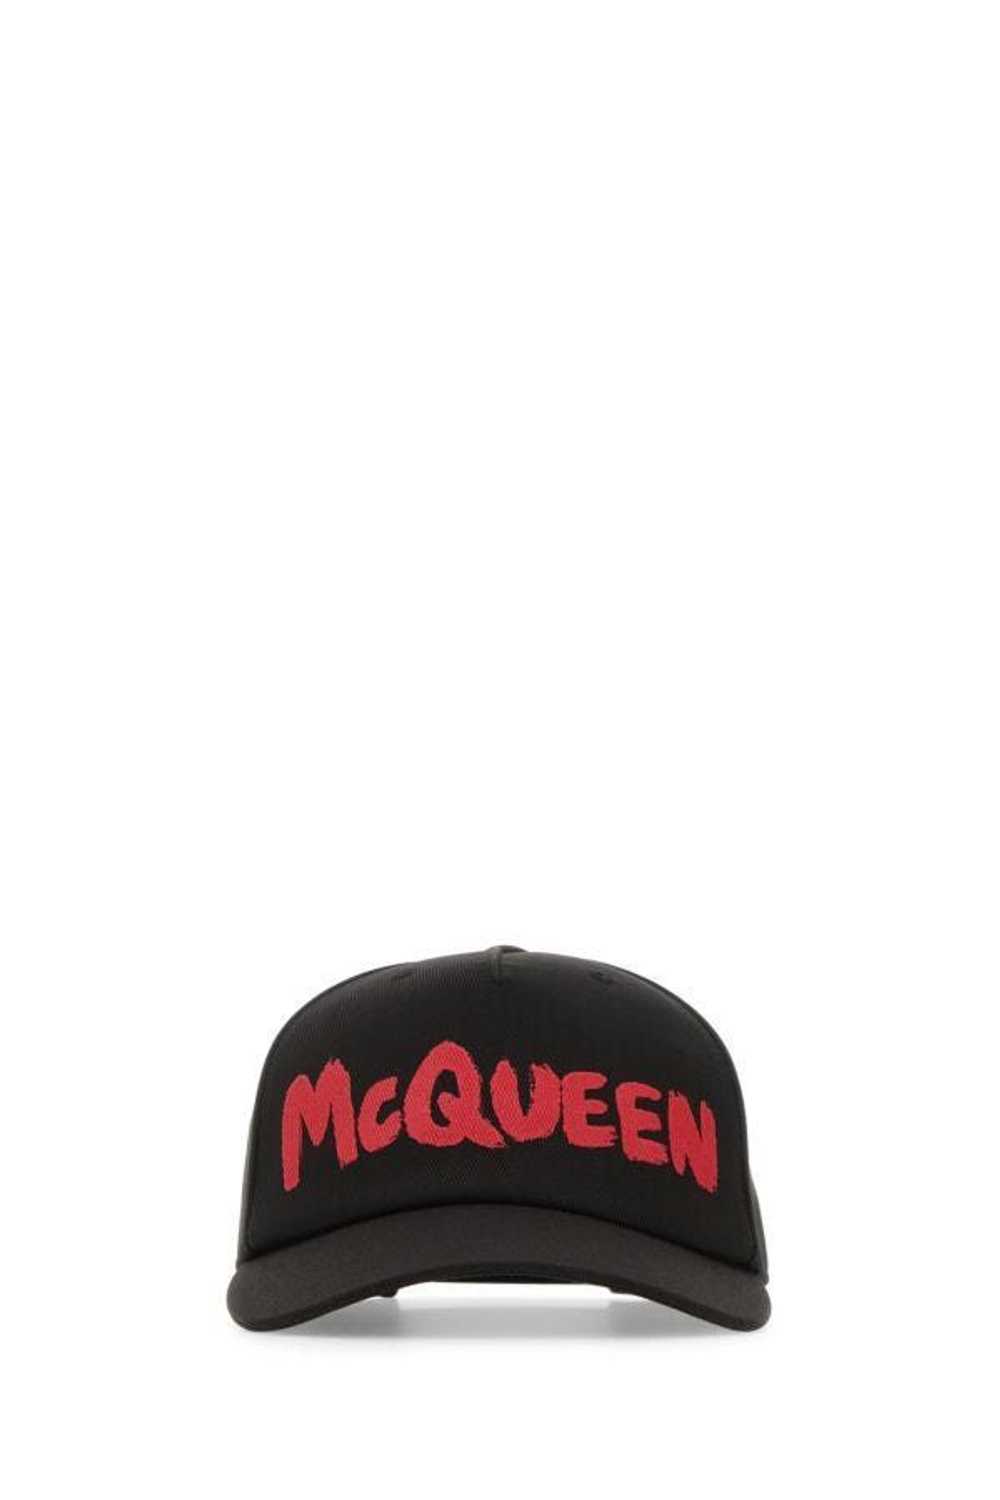 Alexander McQueen Black Cotton Baseball Cap - image 3